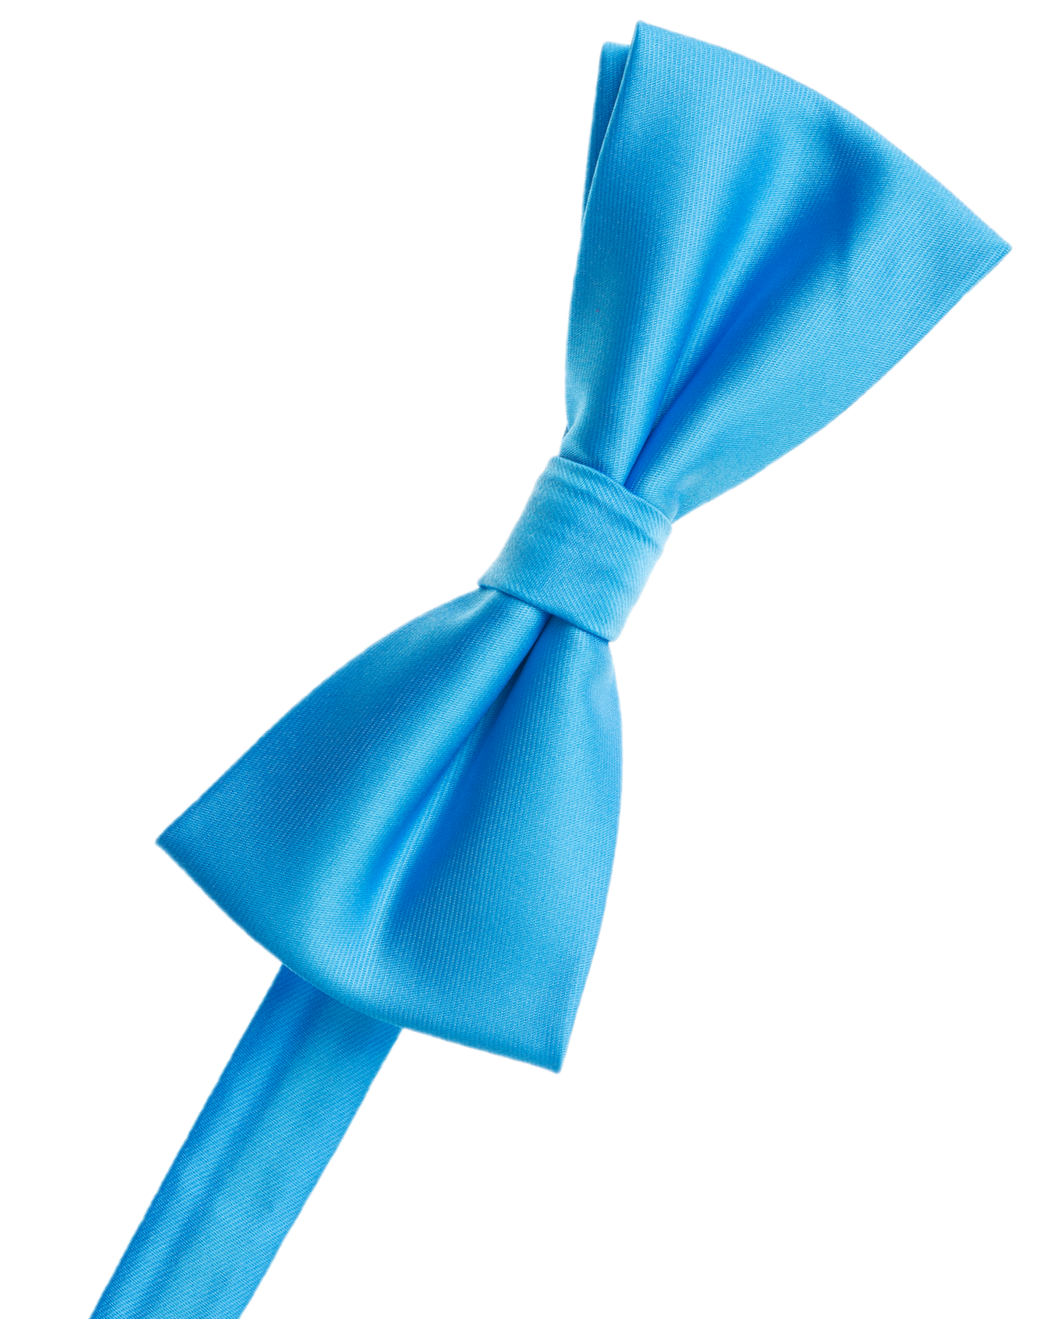 Cobalt Blue Bow Tie